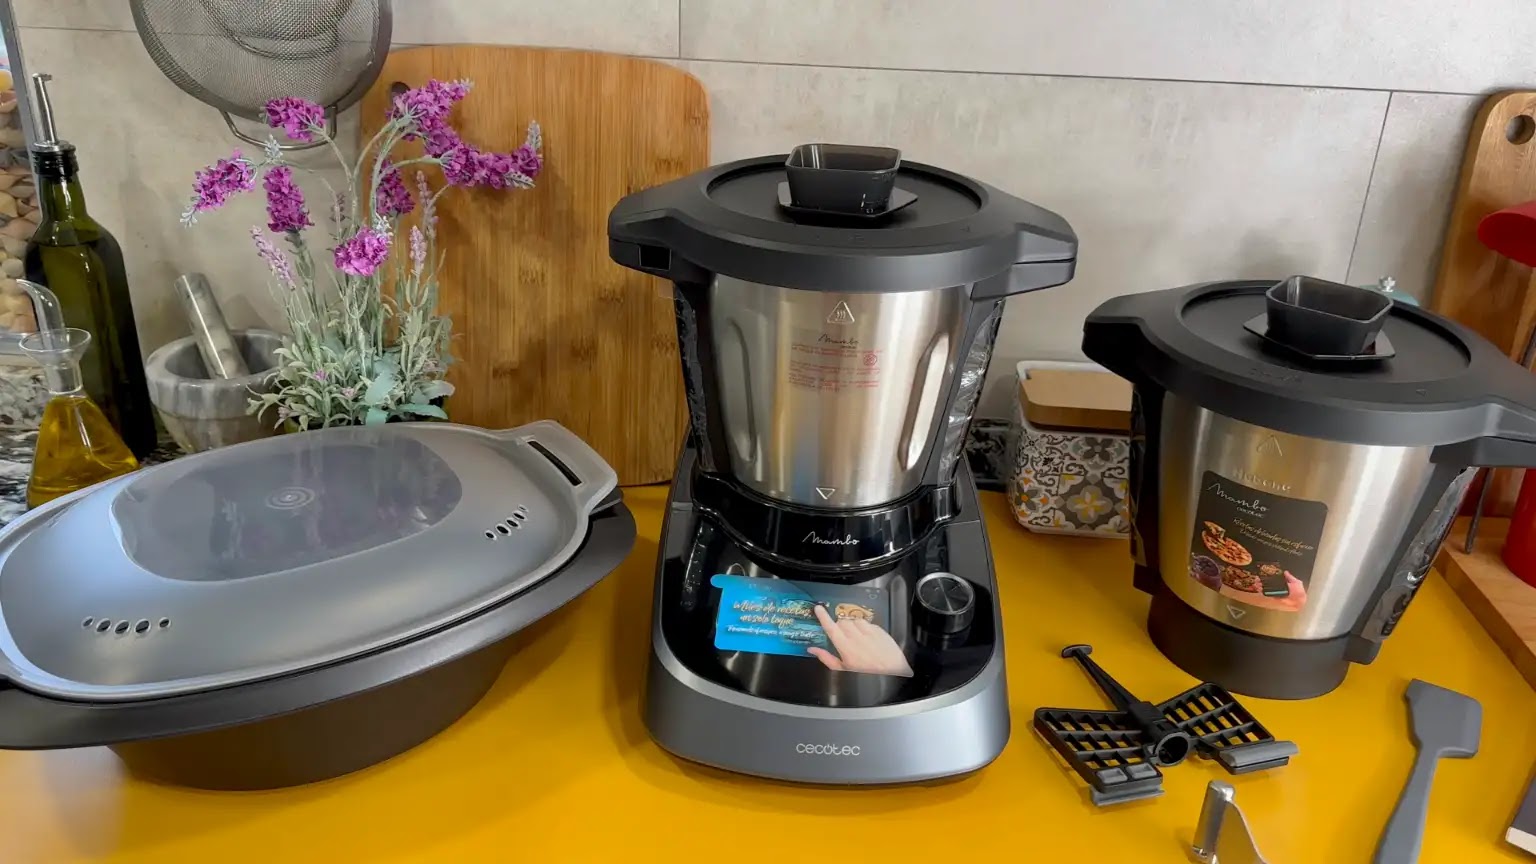 🍽️🤖 ¡Dale un toque de sabor a tu cocina con el Mambo Touch con Jarra  Habana! 🔥✨ Descubre más sobre este robot multifunción 👉🏻